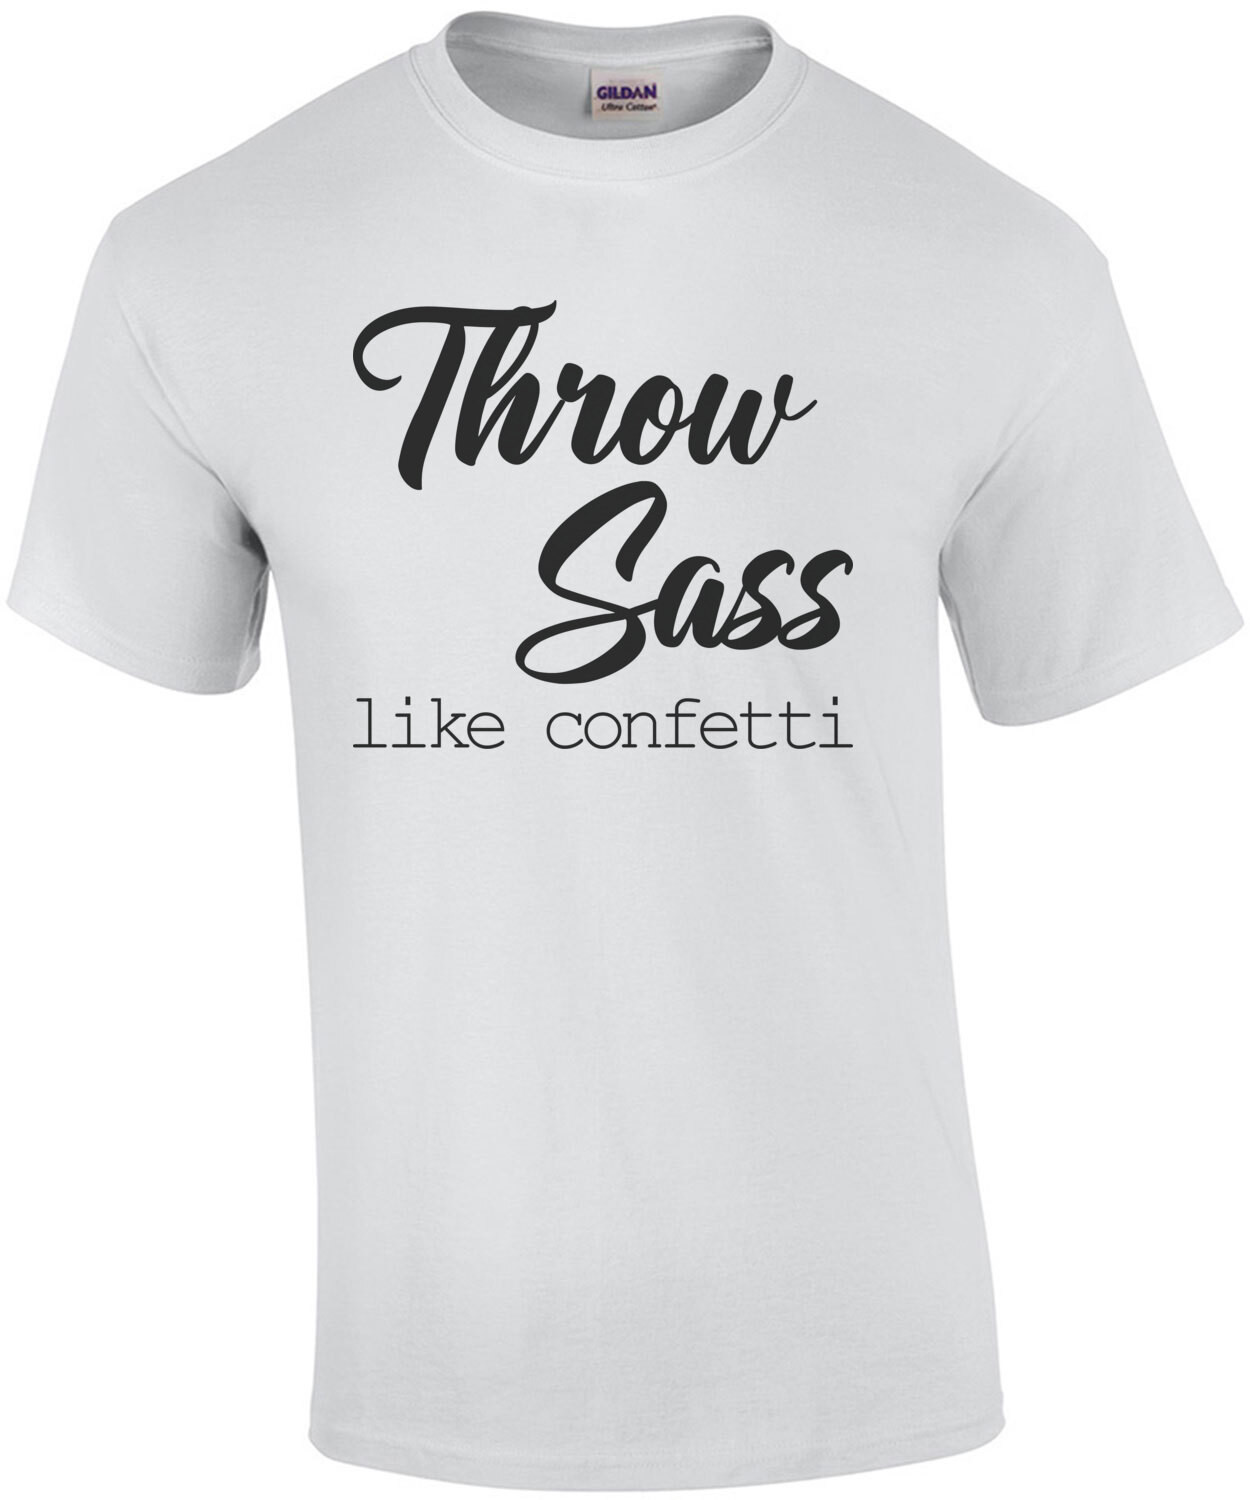 Throw Sass like confetti - ladies t-shirt